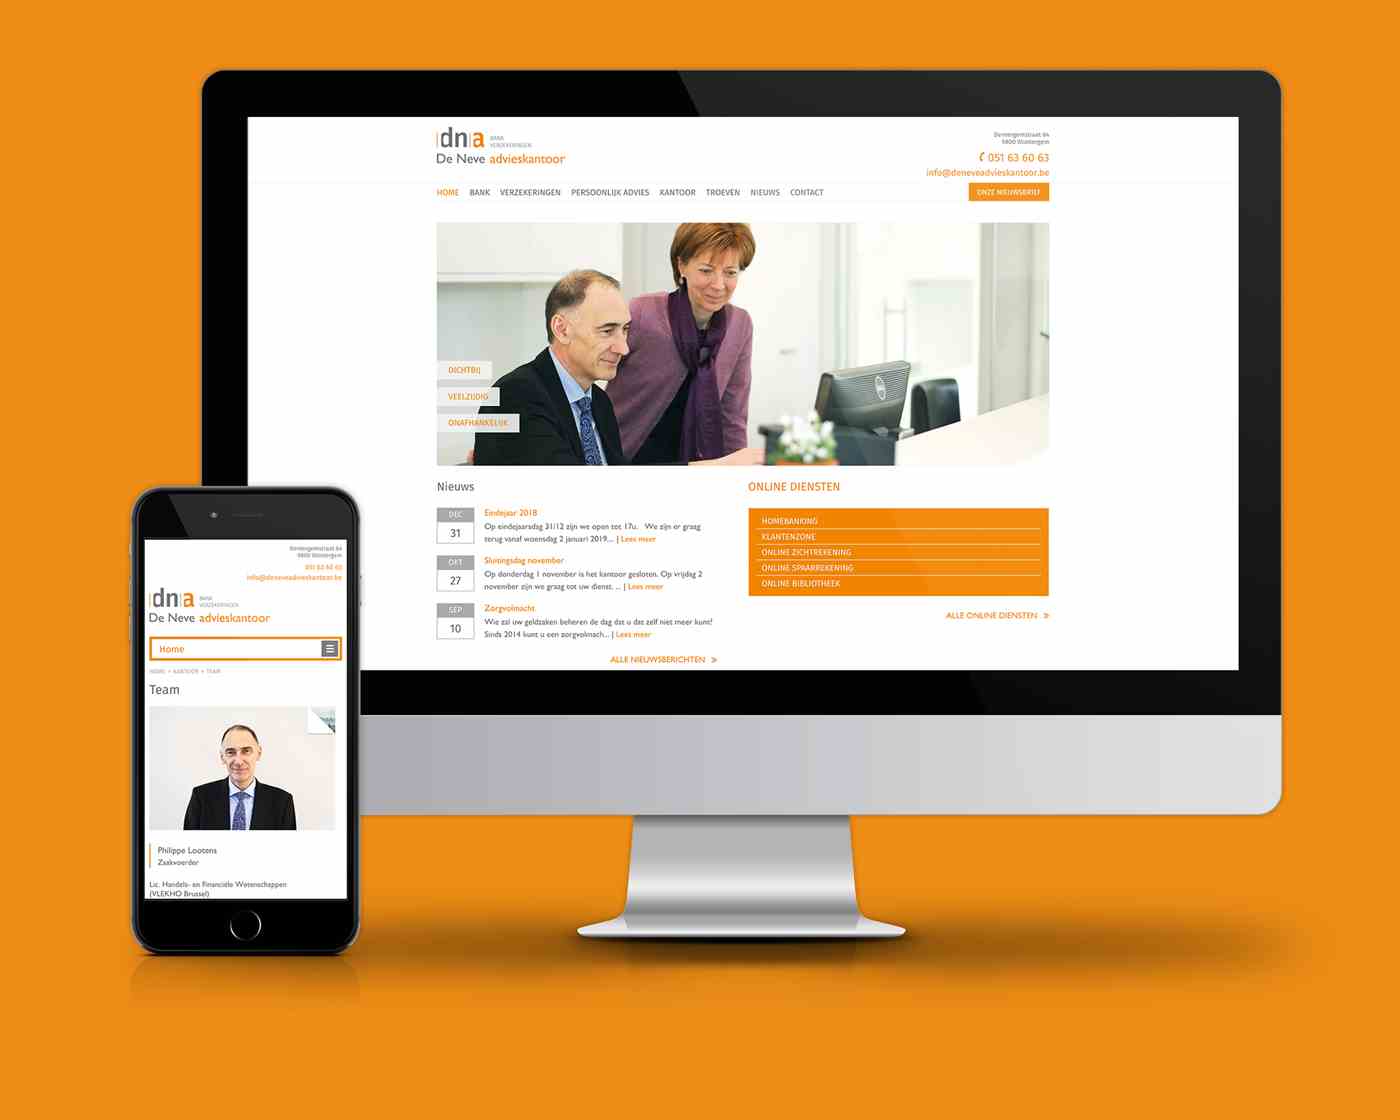 De Neve advieskantoor website preview desktop and smartphone 